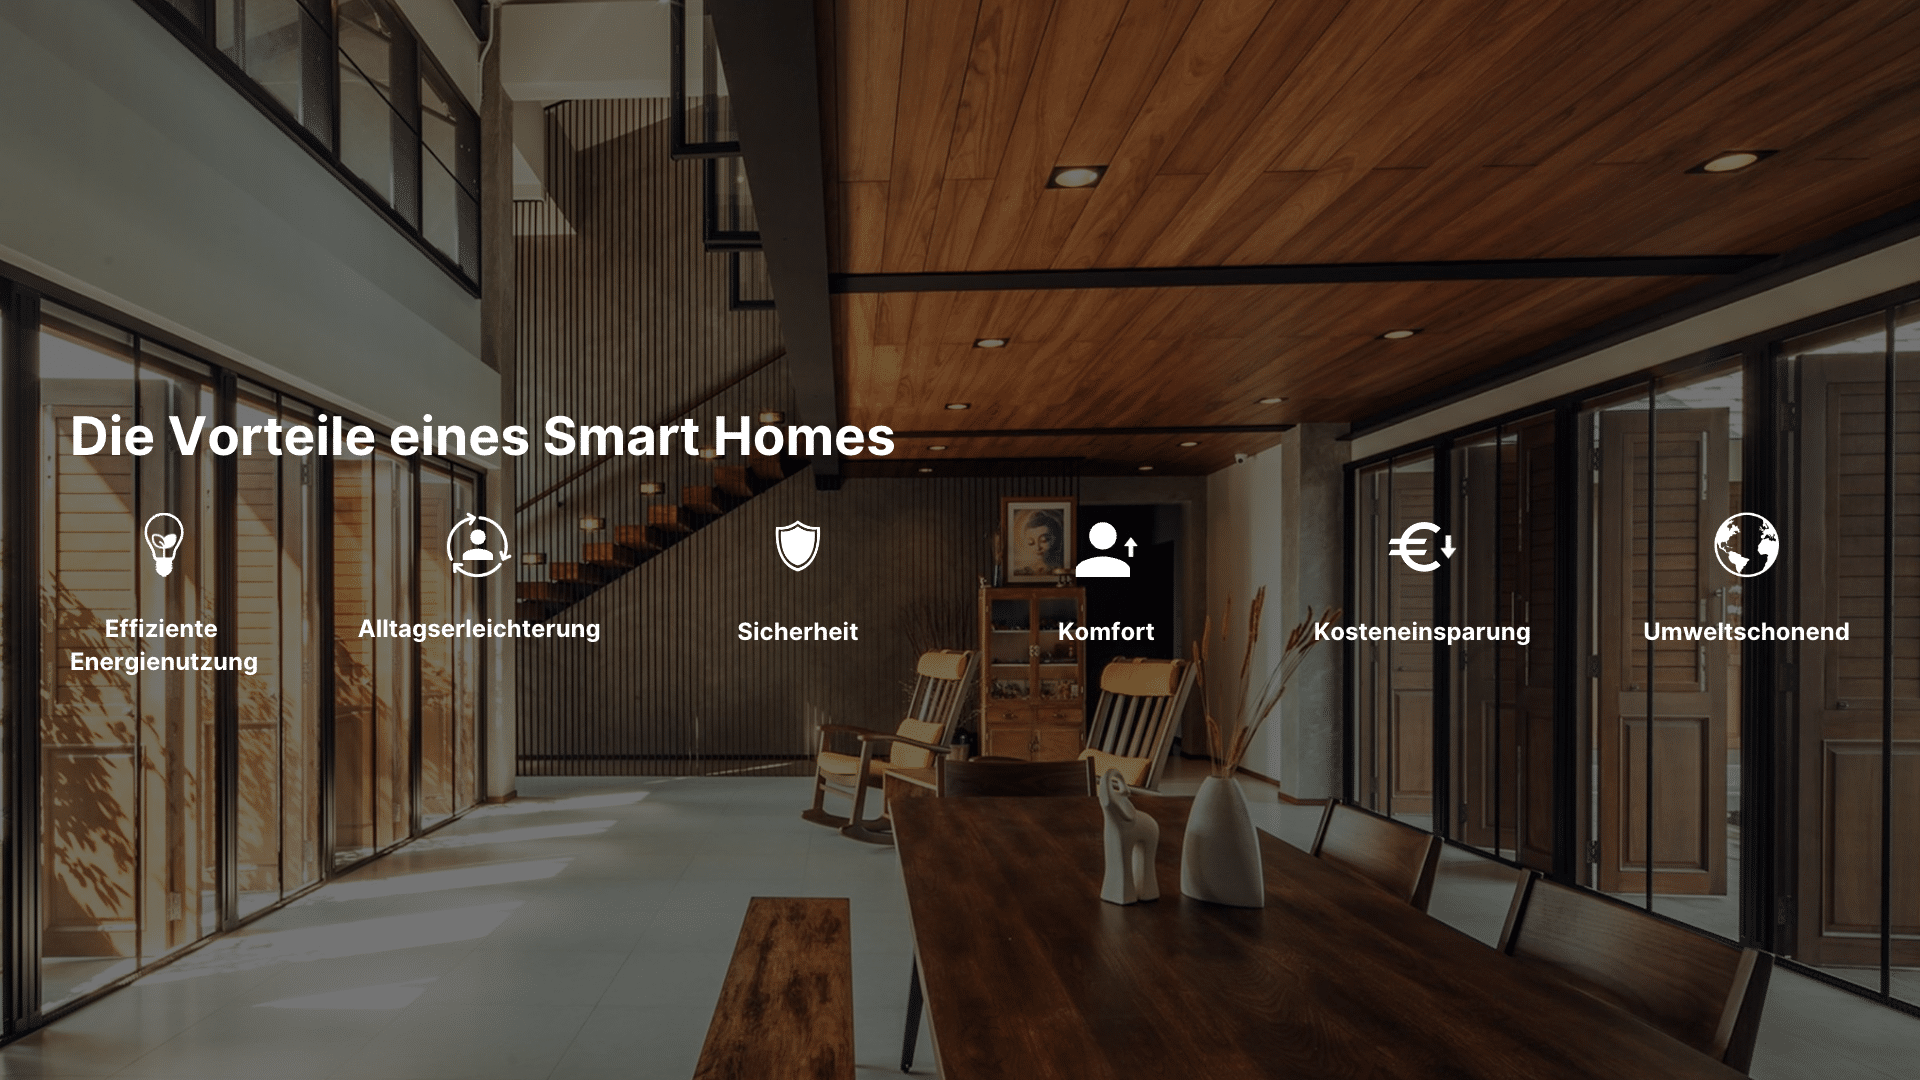 Ein Smart Home bietet folgende Vorteile: Effiziente Energienutzung, Alltagserleichterung, Sicherheit, Komfort, Kosteneinsparung, umweltschonend